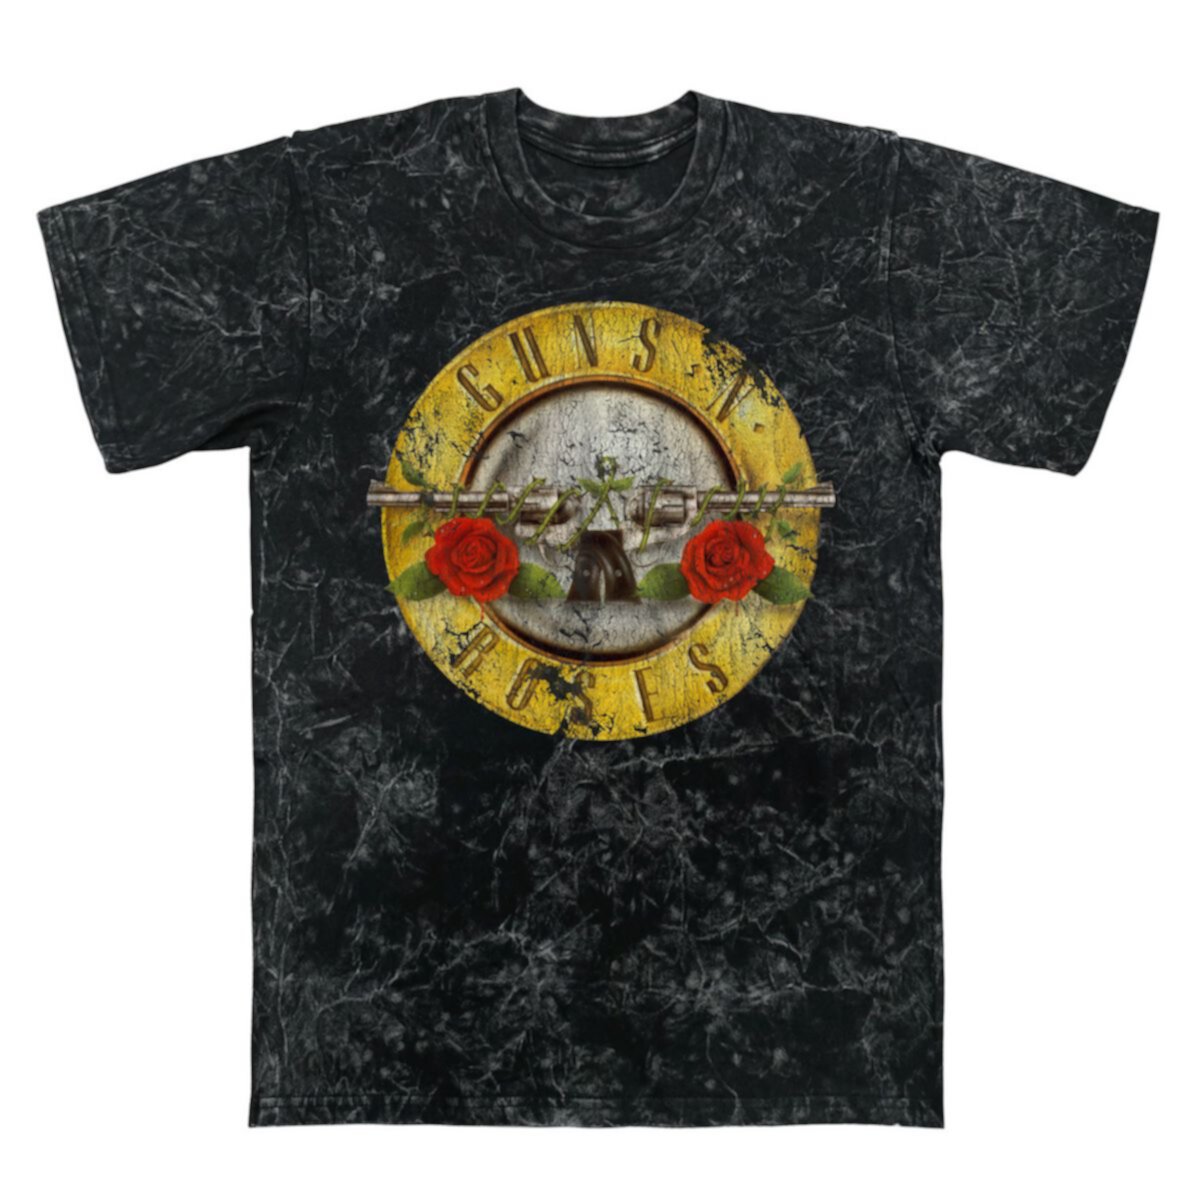 Мужская футболка с рисунком Guns N' Roses Licensed Character